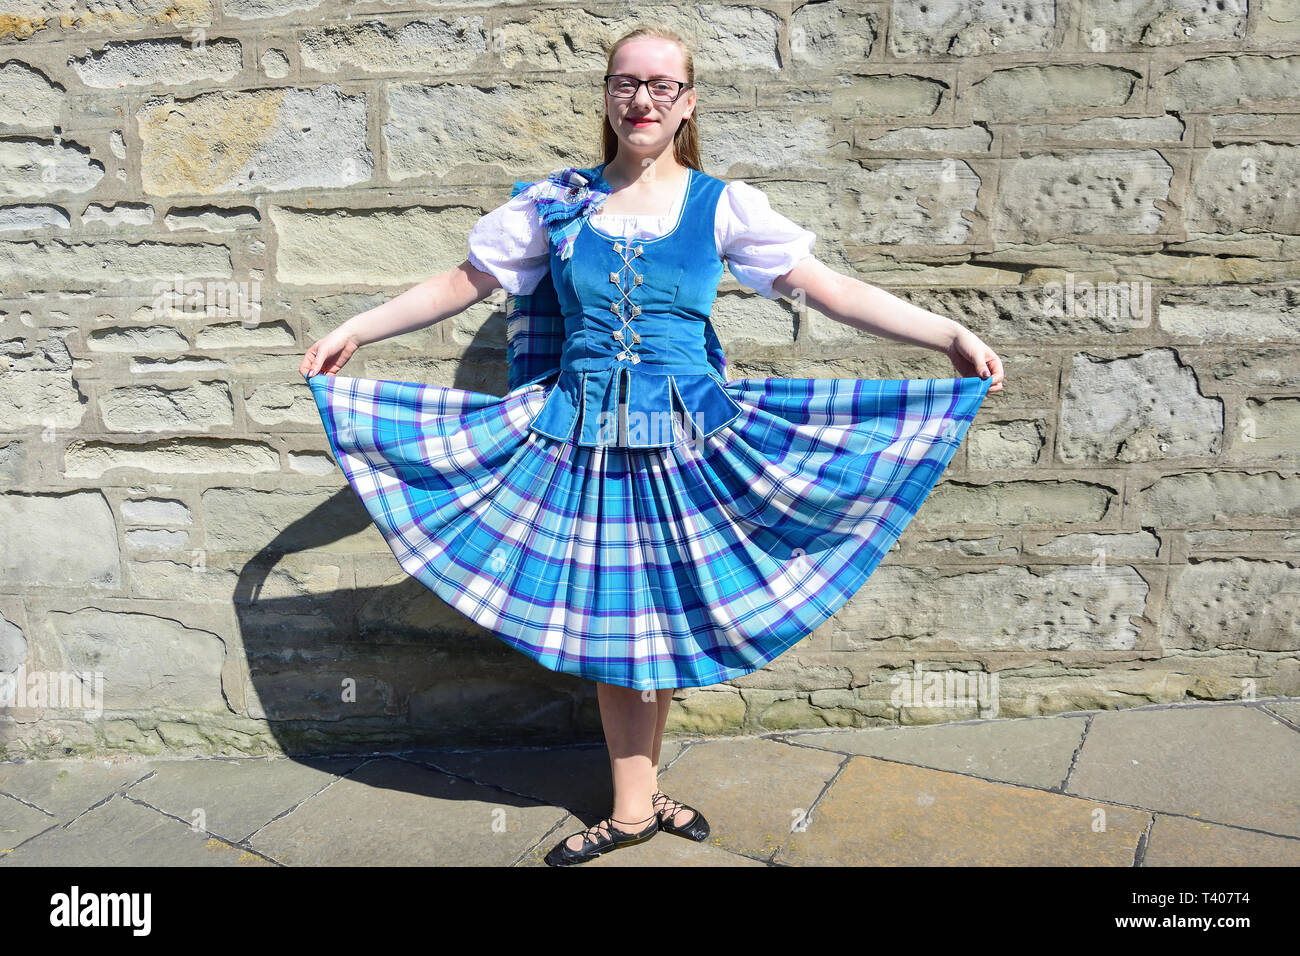 Femmina e giovane ballerino scozzese, Market Cross, Lerwick, Shetland, isole del Nord, Scozia, Regno Unito Foto Stock